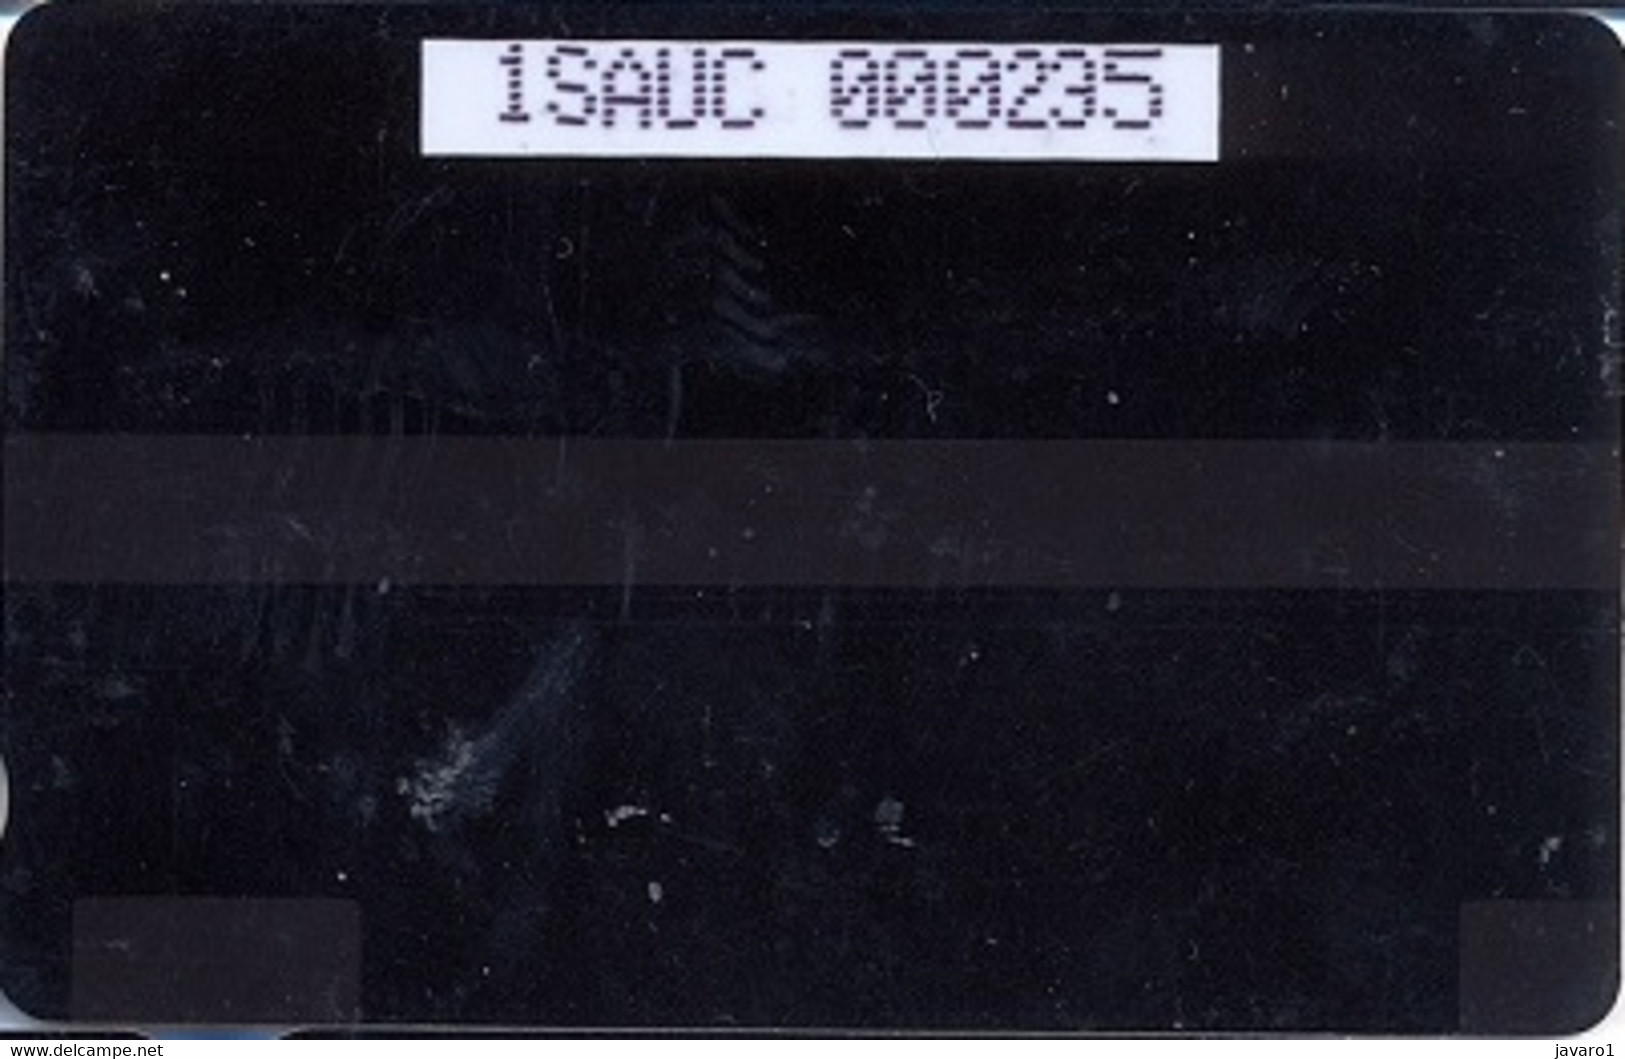 SAUDIARAB : SAUO09 480u Card Type 2 Test Card MINT - Saudi Arabia